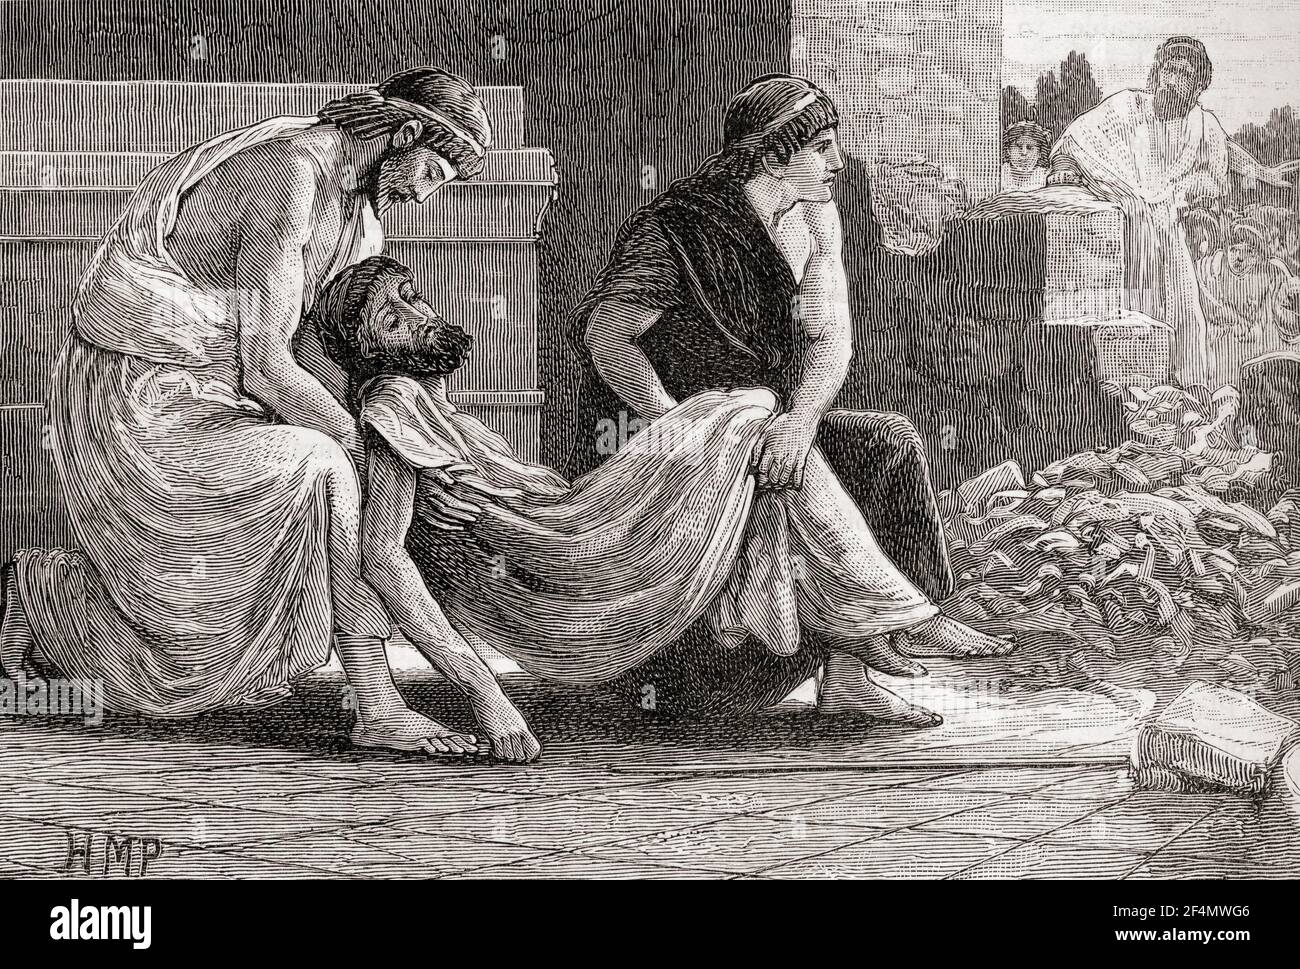 Der Tod von Pausanius, gezwungen, im Tempel von Athena durch den Spartan Ephors des Hungers zu sterben. Pausanias, starb c. 477 V. CHR. Spartanischer Regent und General. Aus Cassells Universal History, veröffentlicht 1888. Stockfoto